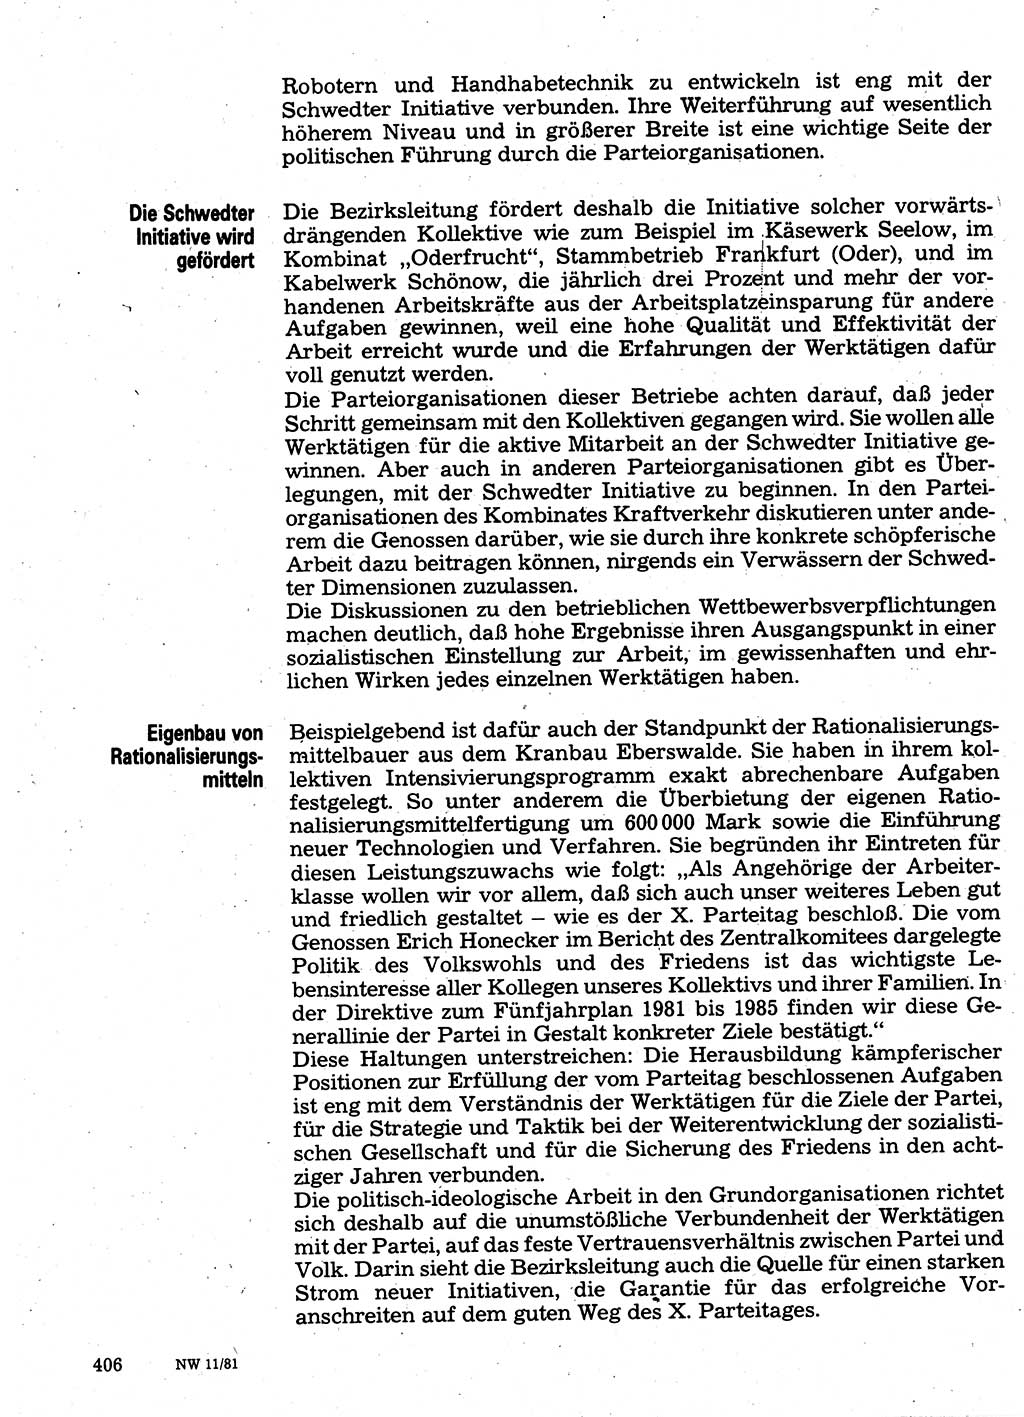 Neuer Weg (NW), Organ des Zentralkomitees (ZK) der SED (Sozialistische Einheitspartei Deutschlands) für Fragen des Parteilebens, 36. Jahrgang [Deutsche Demokratische Republik (DDR)] 1981, Seite 406 (NW ZK SED DDR 1981, S. 406)